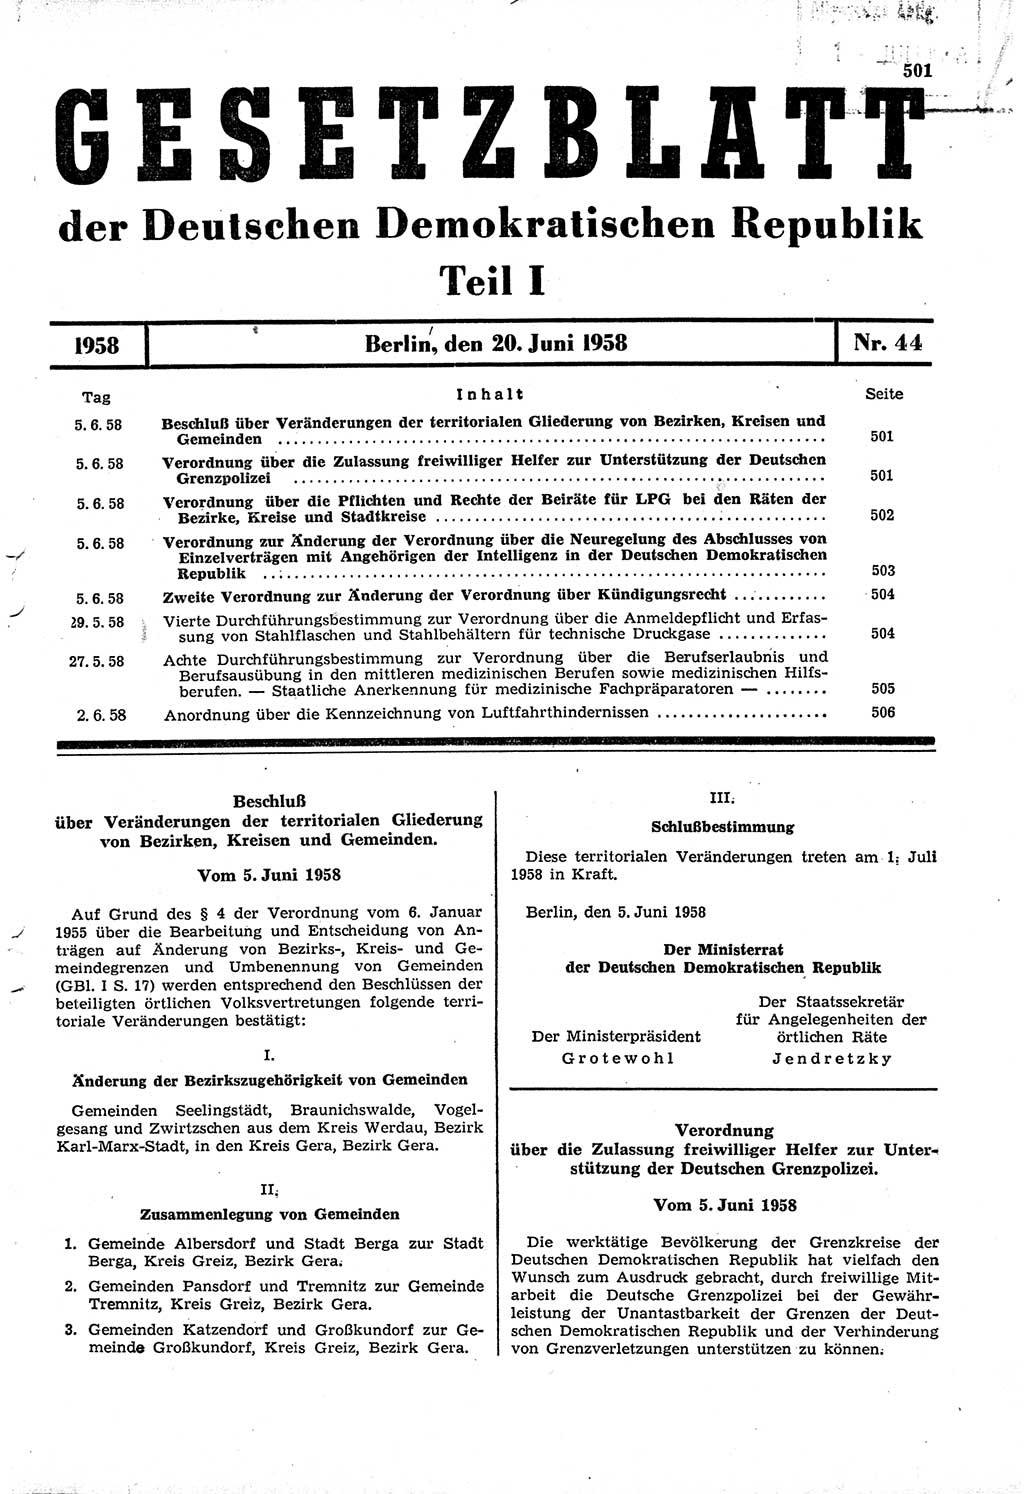 Gesetzblatt (GBl.) der Deutschen Demokratischen Republik (DDR) Teil Ⅰ 1958, Seite 501 (GBl. DDR Ⅰ 1958, S. 501)